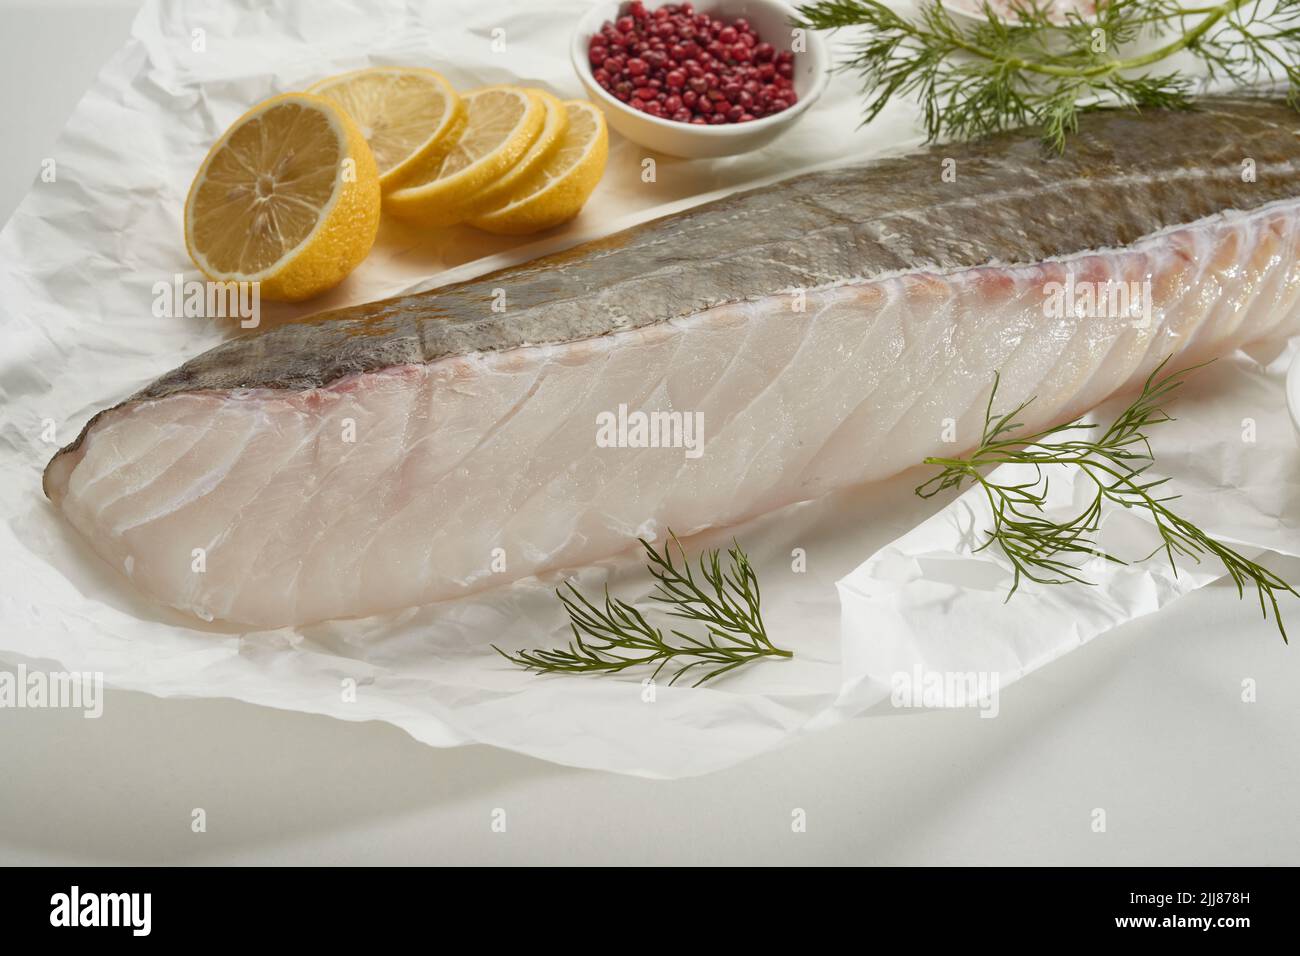 Gran ángulo de filete de pescado crudo y rodajas de limón sobre mesa blanca con pimienta y eneldo Foto de stock